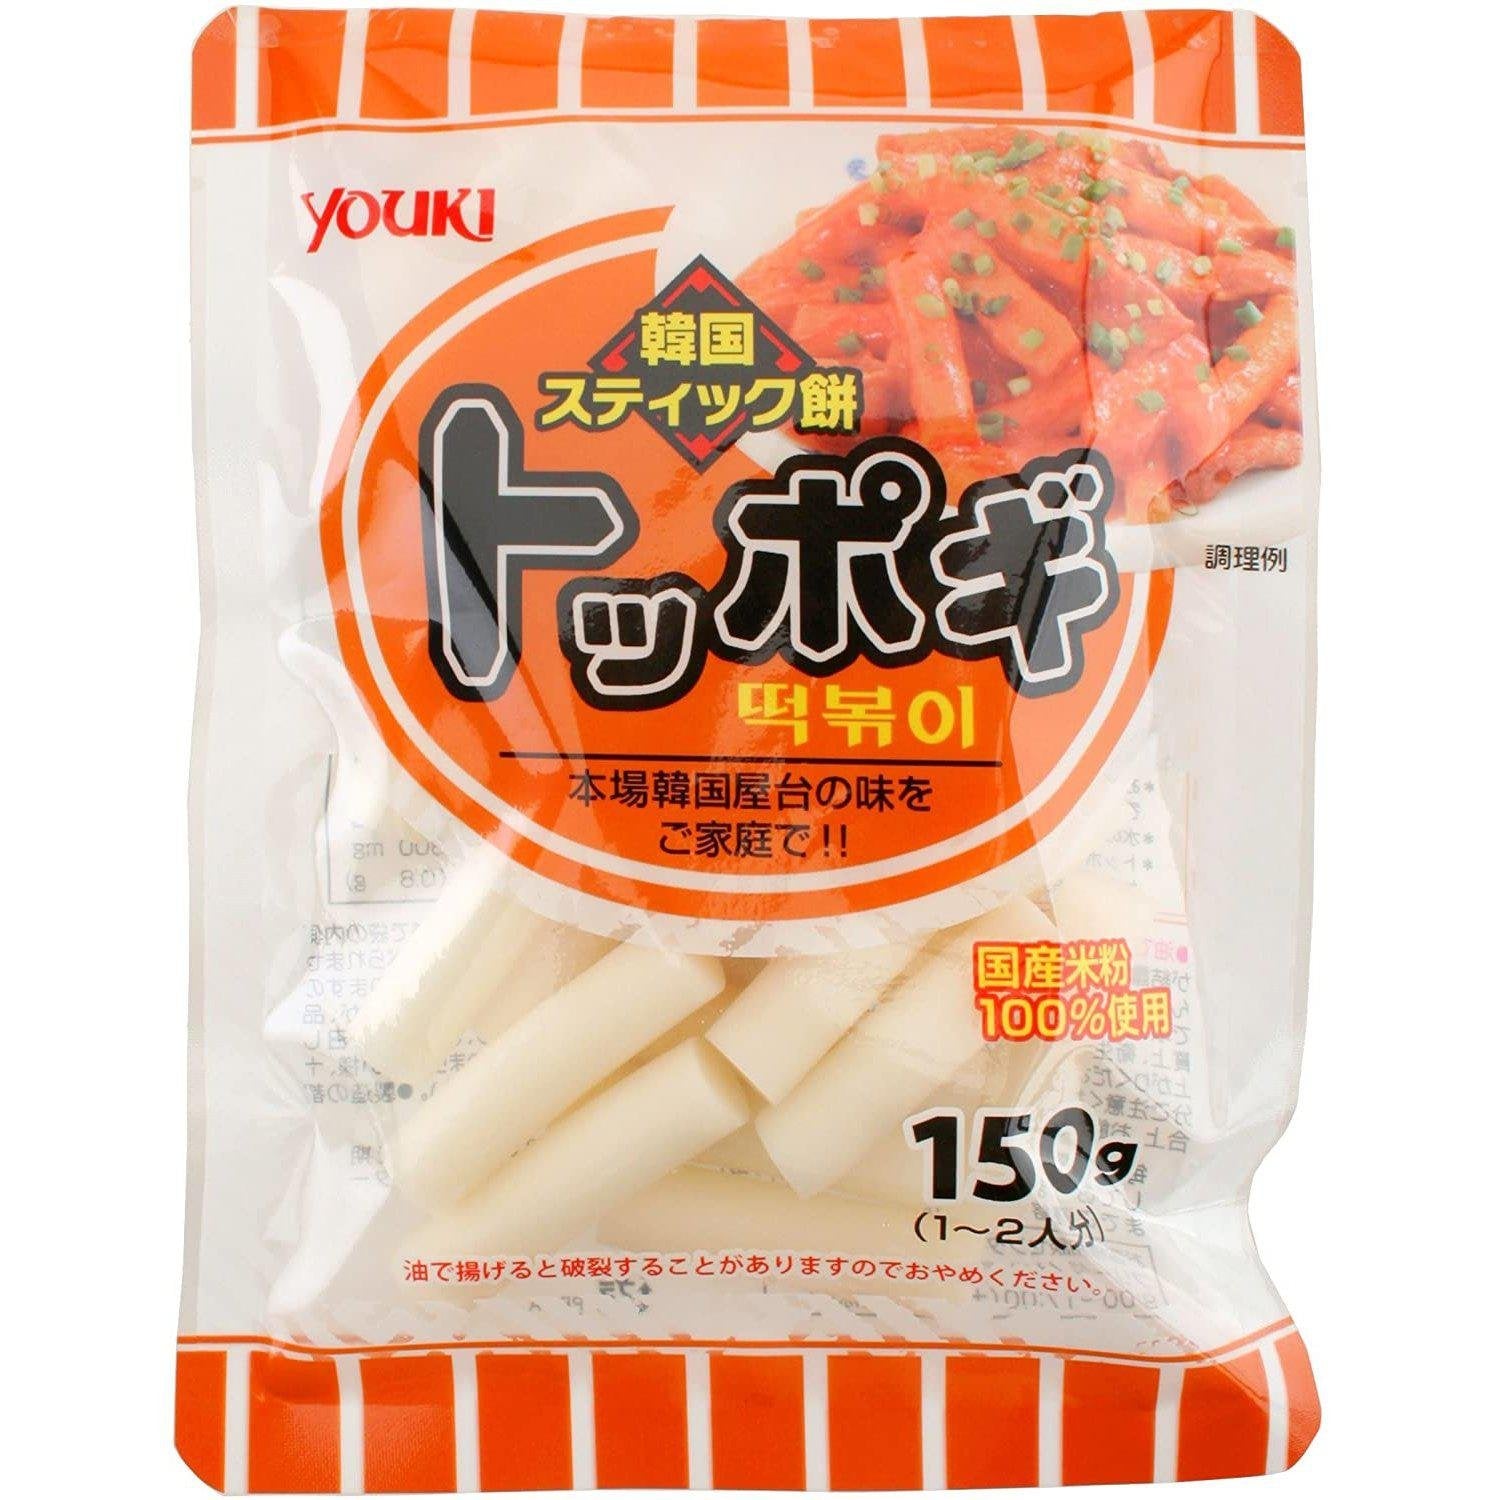 P-1-YOKI-TOPOGI-1-Youki Toppogi Korean Rice Cake Sticks 150g.jpg